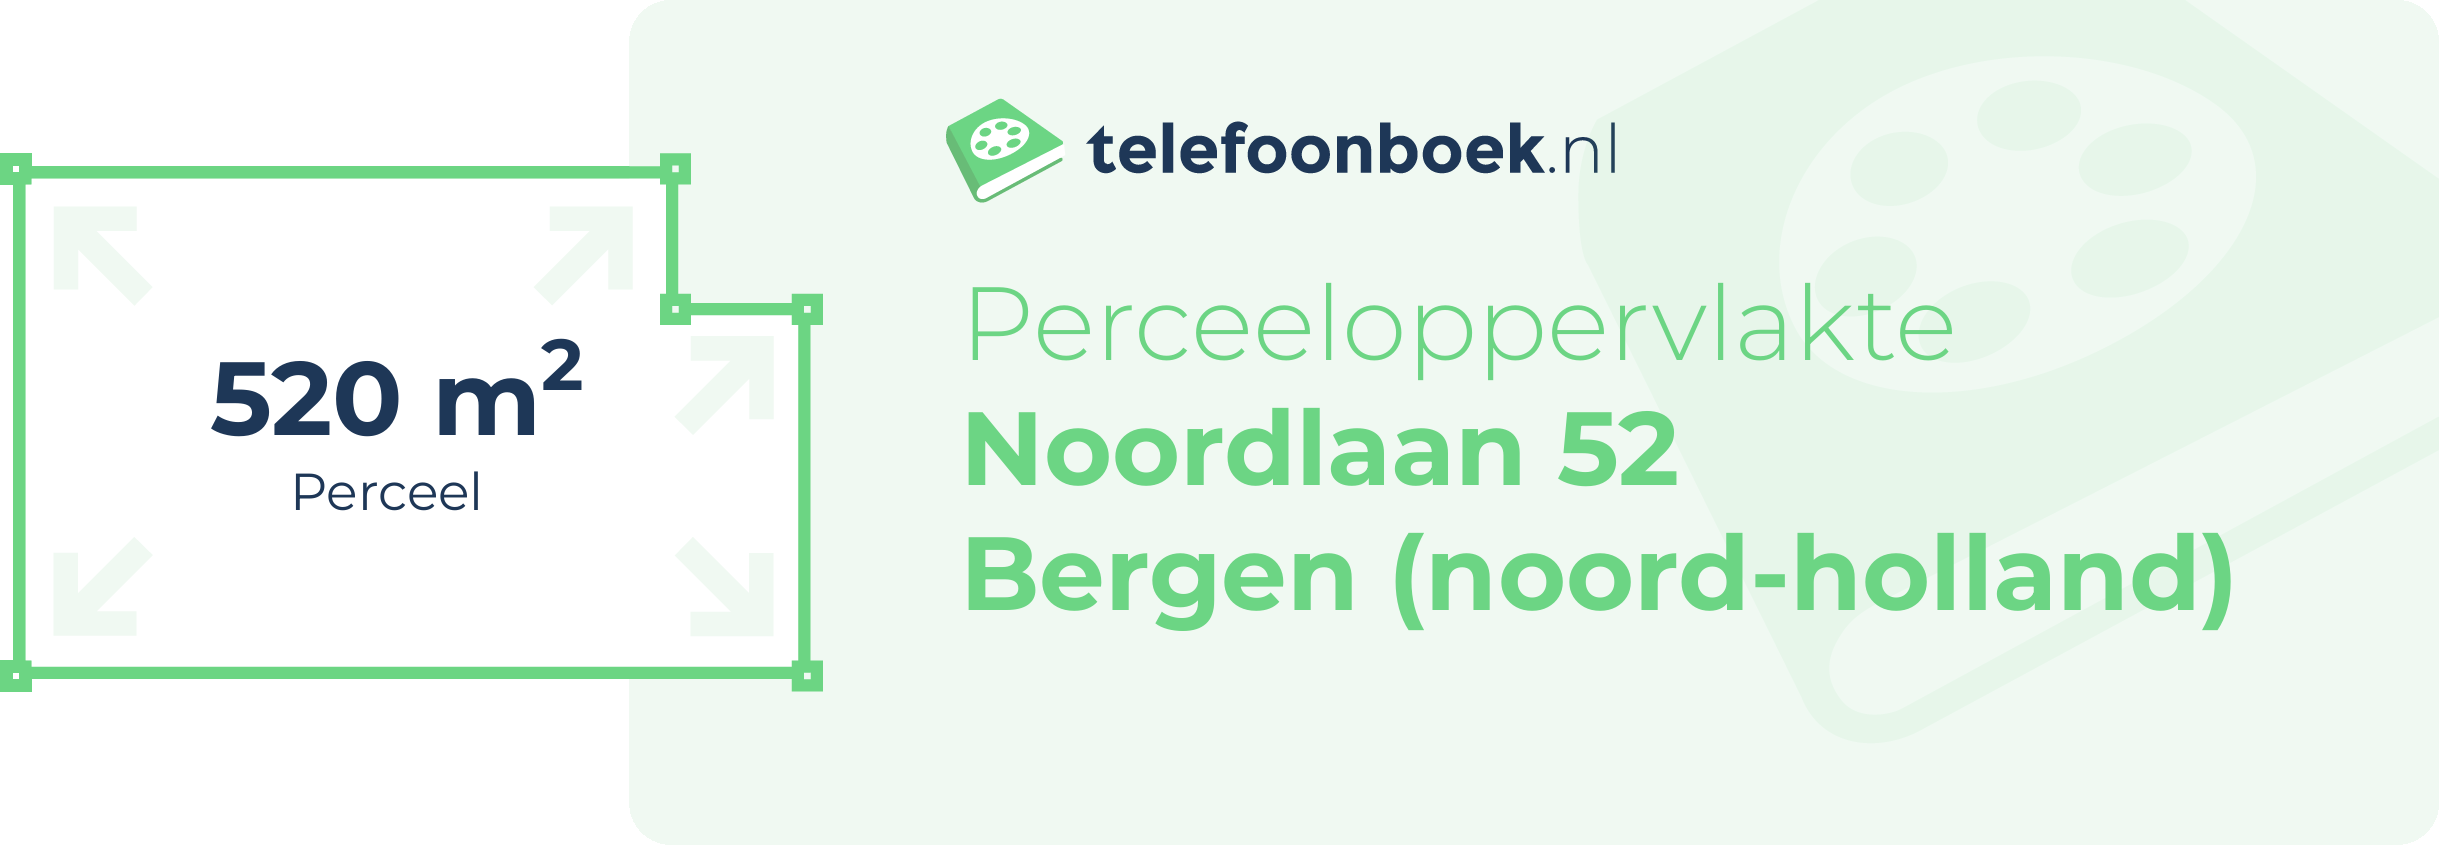 Perceeloppervlakte Noordlaan 52 Bergen (Noord-Holland)